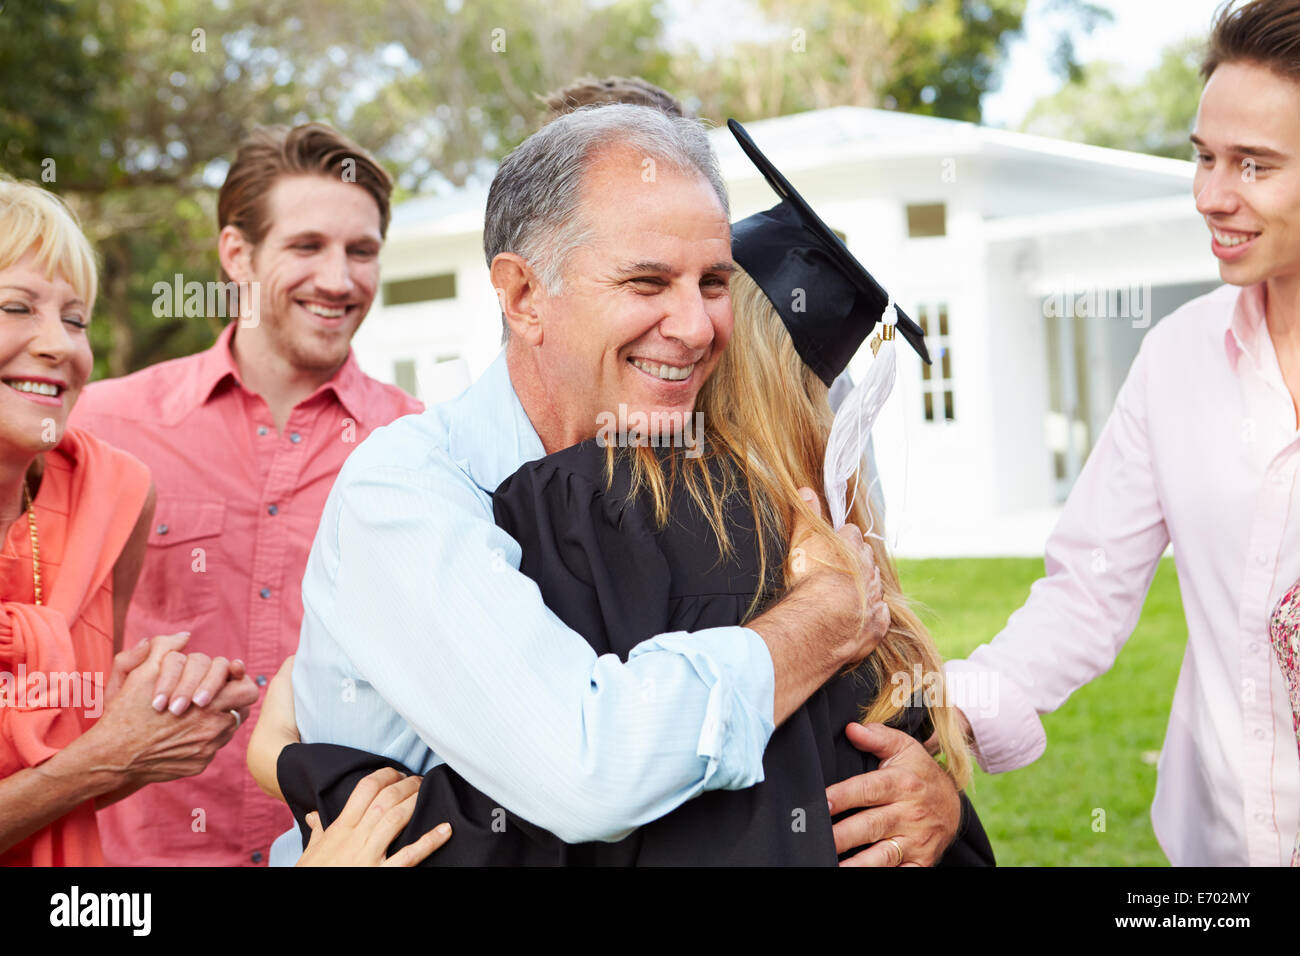 Studentin und Familie feiern Abschluss Stockfoto